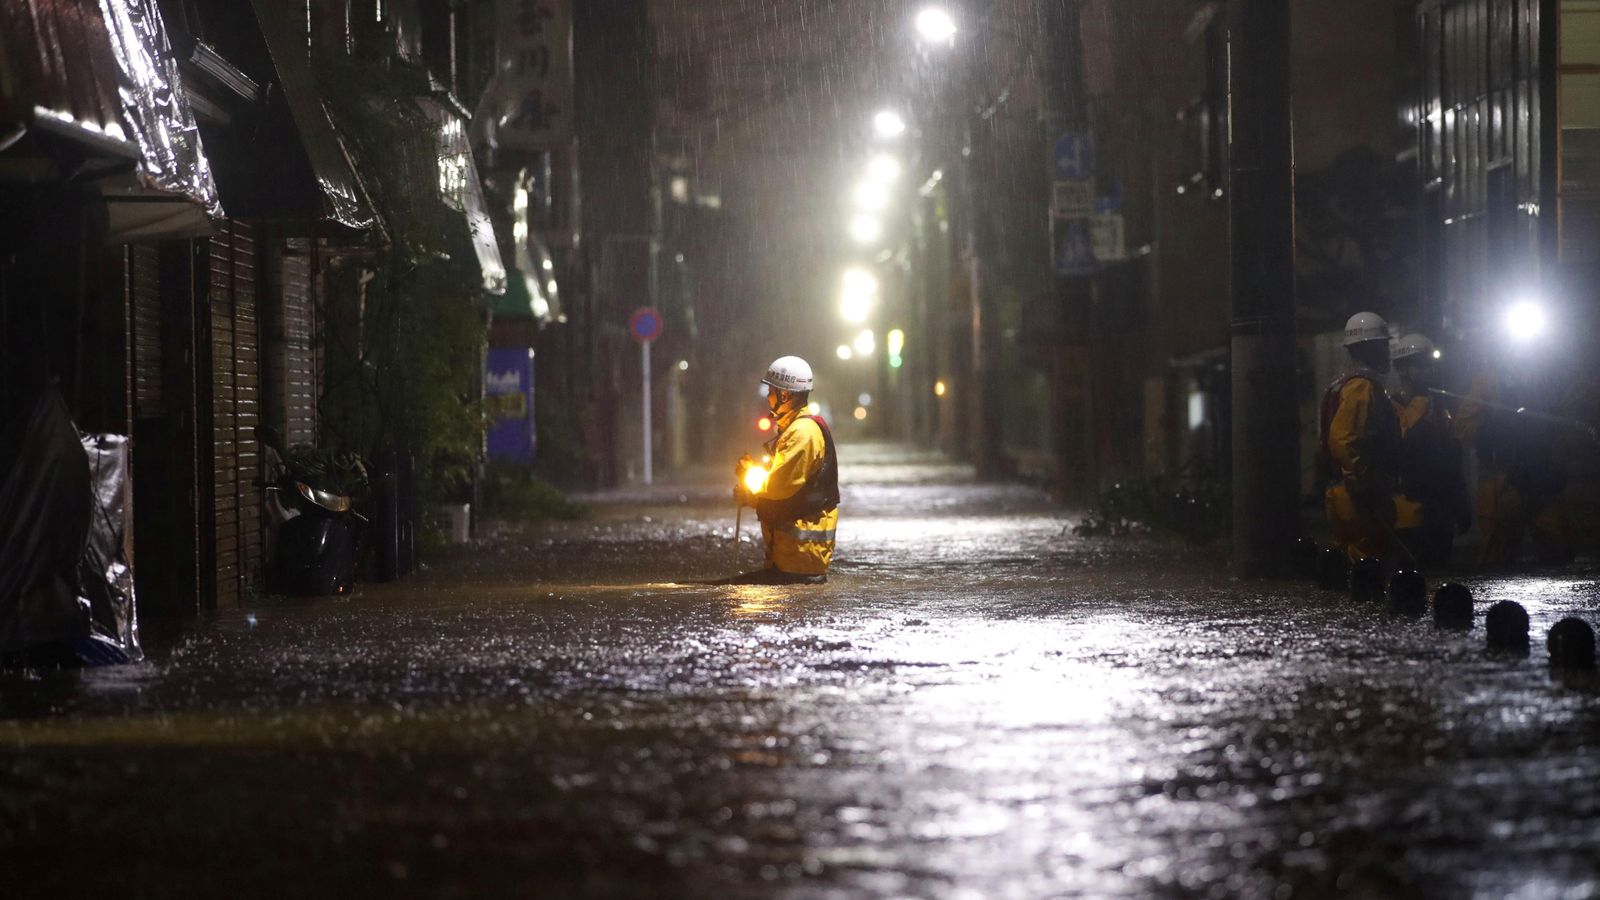 जापानमा भारी वर्षा र तुफान, ७० लाख मानिसलाई सुरक्षित स्थानमा जान आग्रह